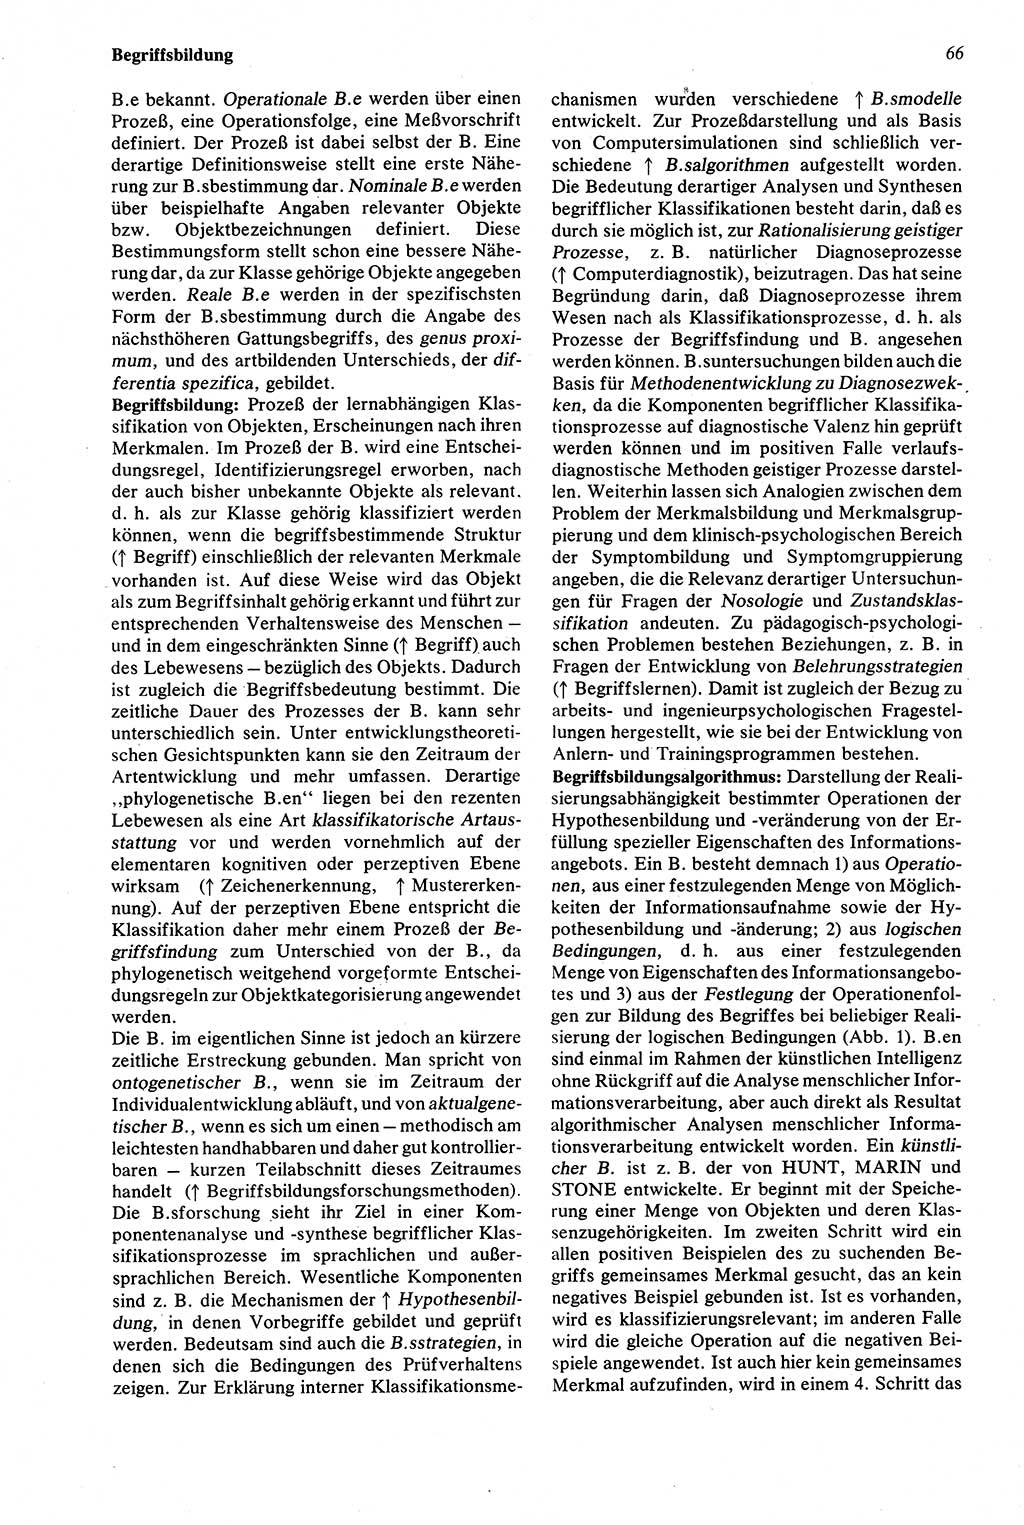 Wörterbuch der Psychologie [Deutsche Demokratische Republik (DDR)] 1976, Seite 66 (Wb. Psych. DDR 1976, S. 66)